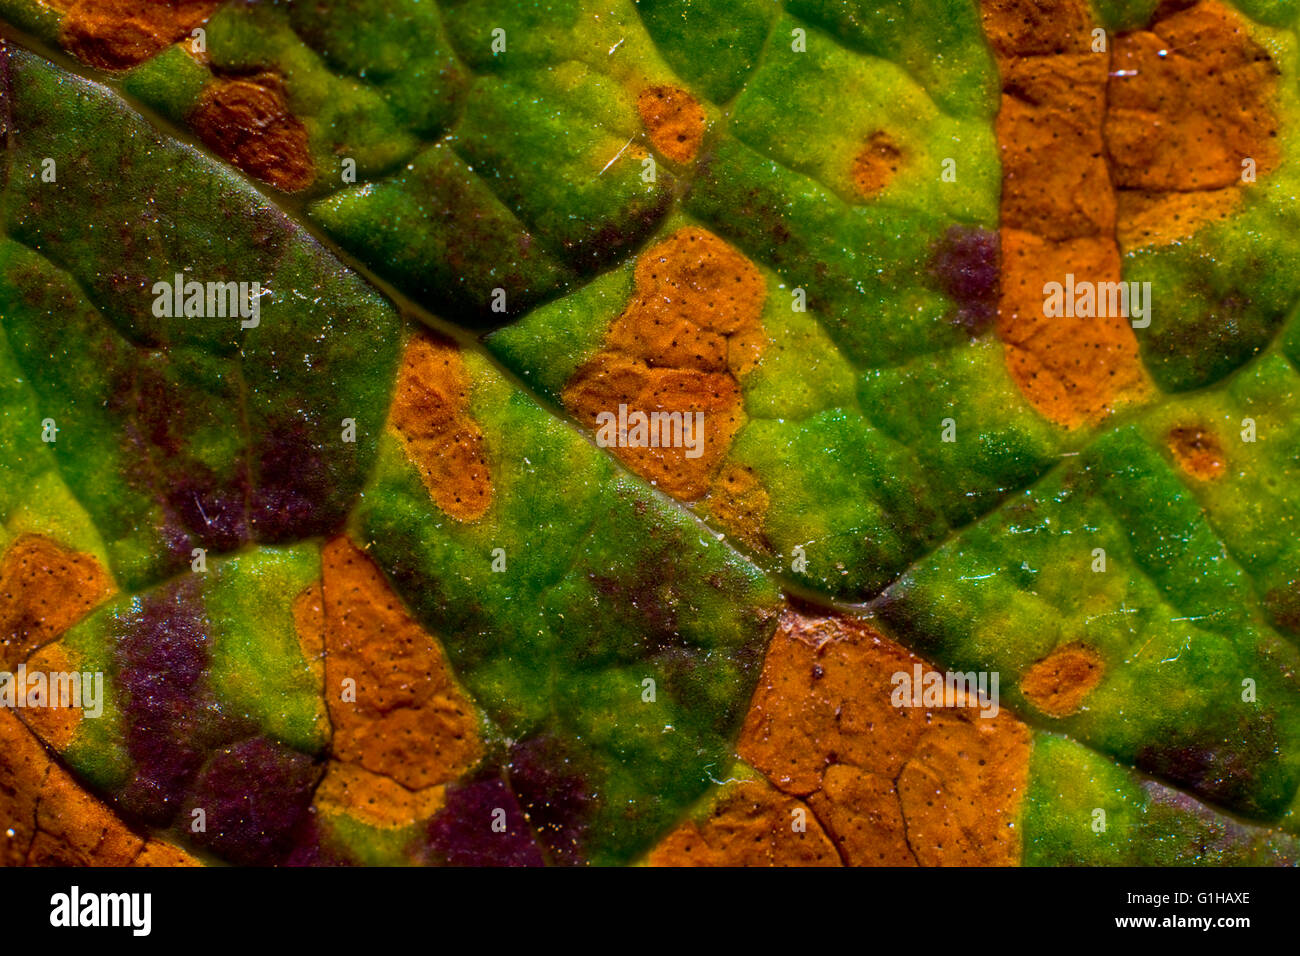 autoecious rust fungi, on St. John’s wort Hypericum calycinum leaf close up Stock Photo